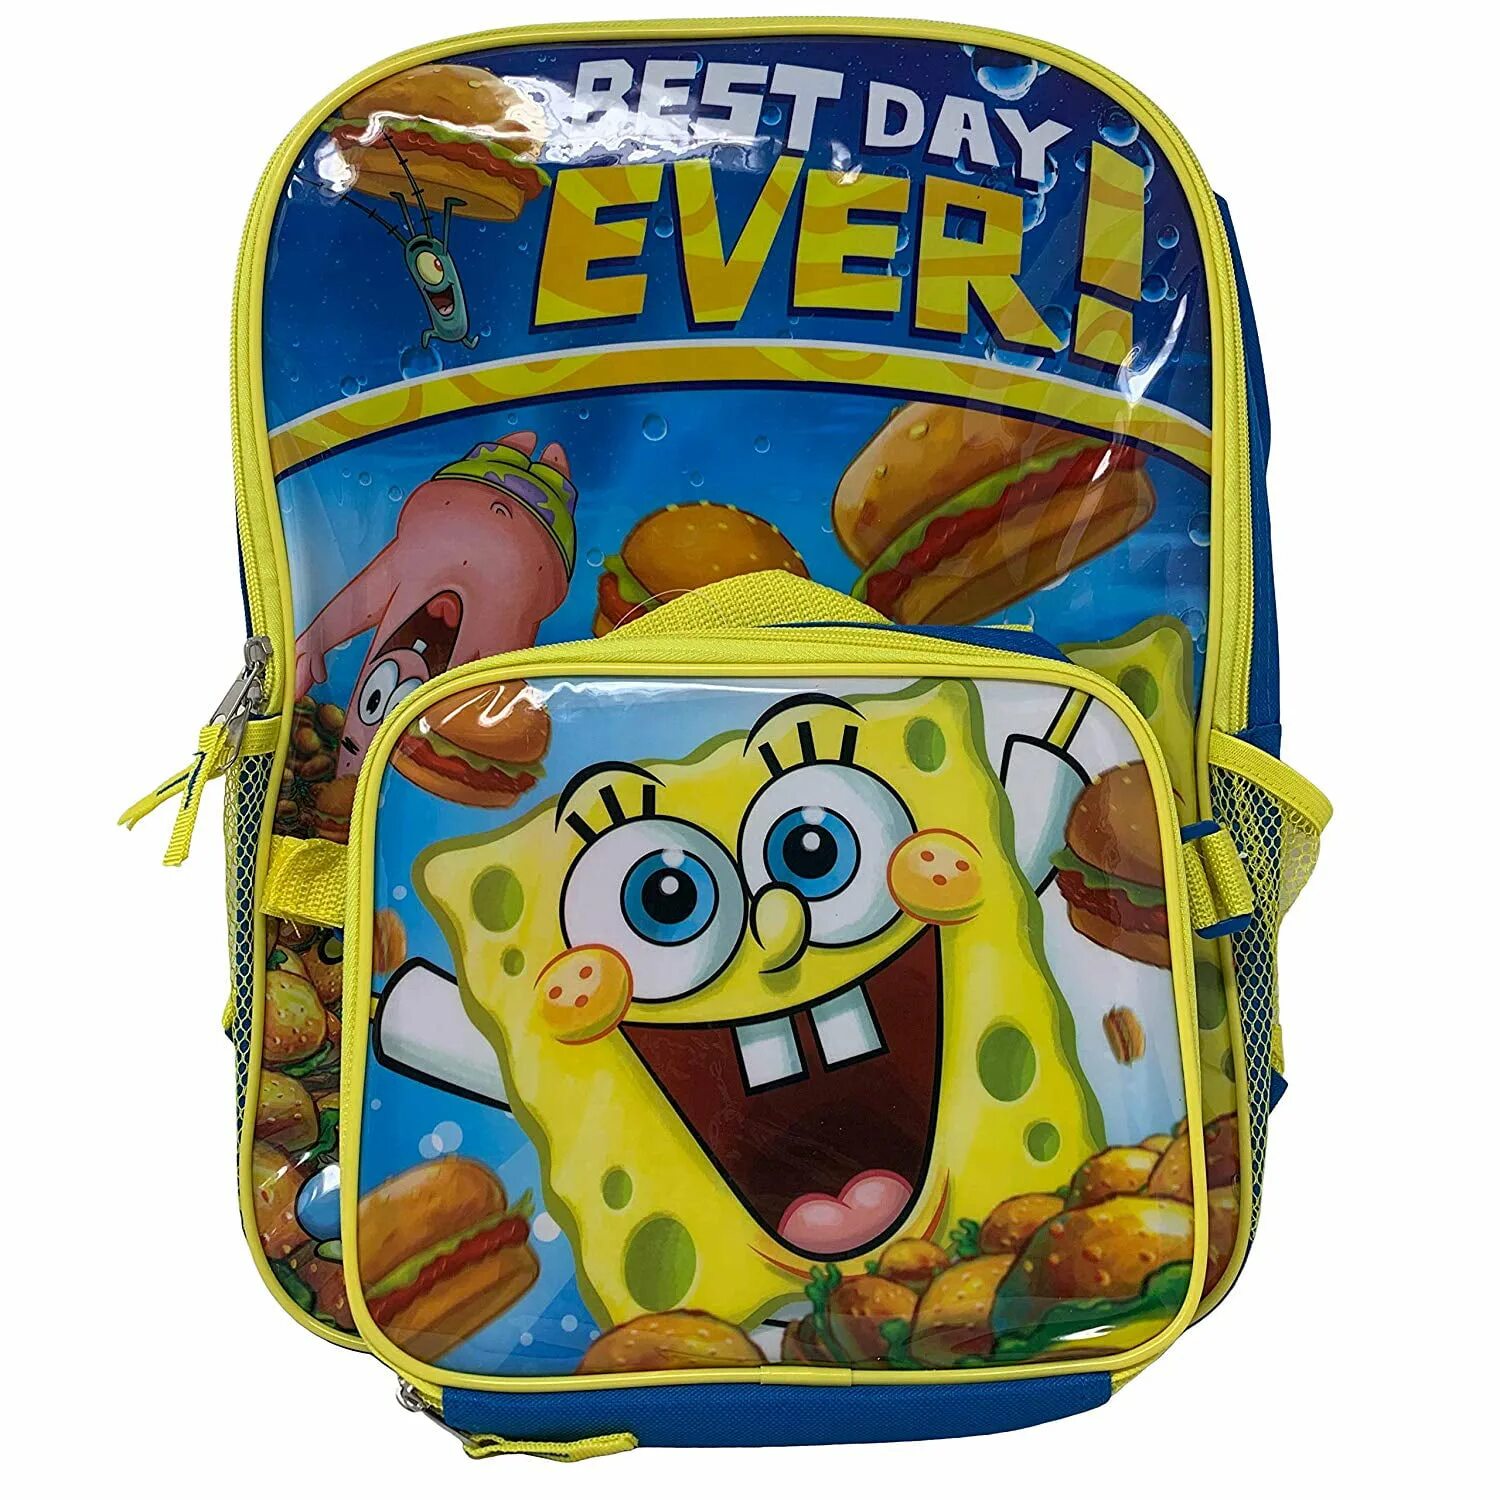 Spongebob pack. Губка Боб квадратные штаны рюкзак. Ланч бокс губка Боб. Spongebob Squarepants Pack.. Рюкзак Боб вельсиб.